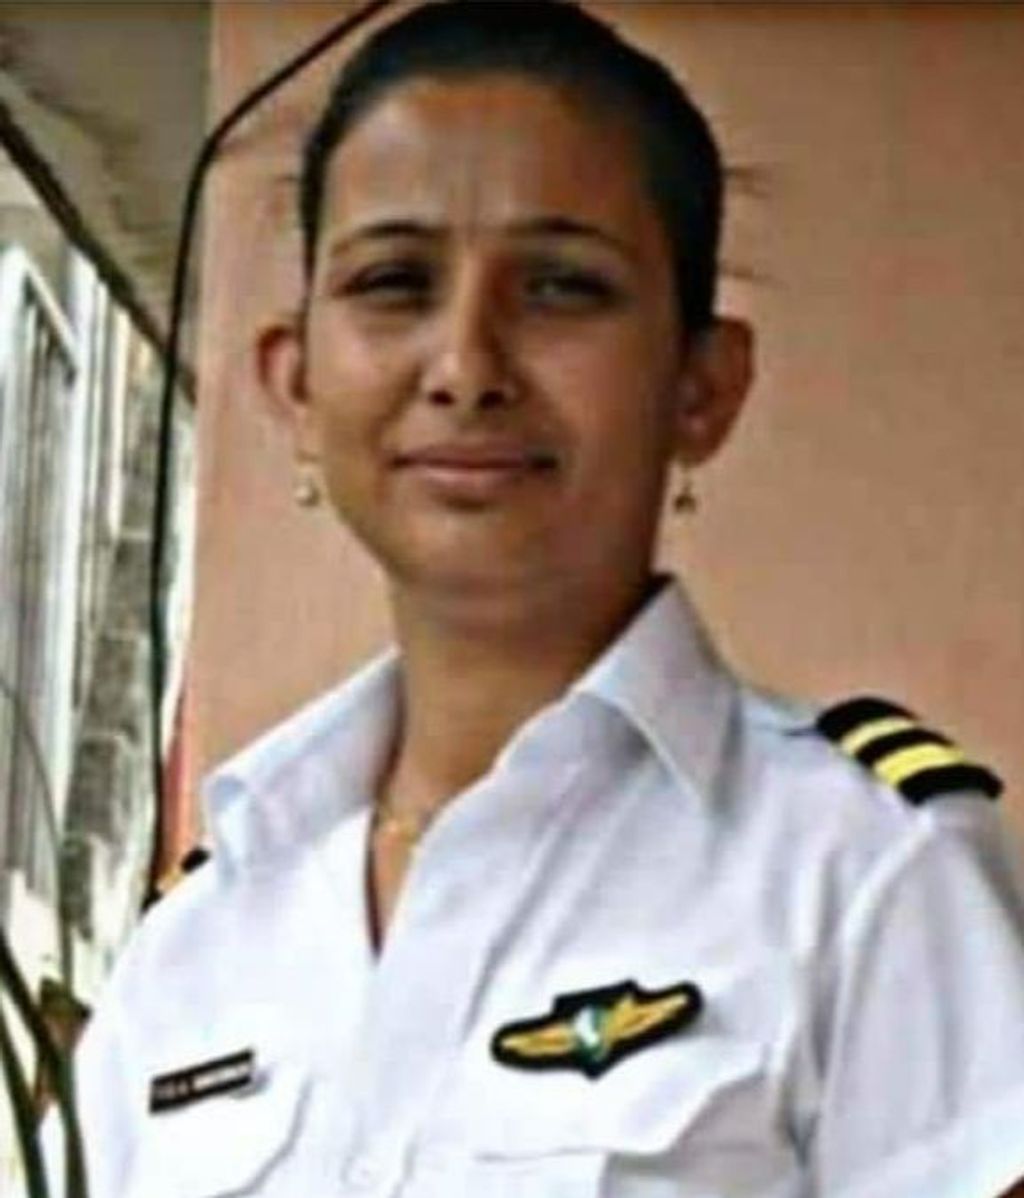 La copiloto del avión de Nepal había hecho vuelos en solitario: "Era una mujer muy valiente"